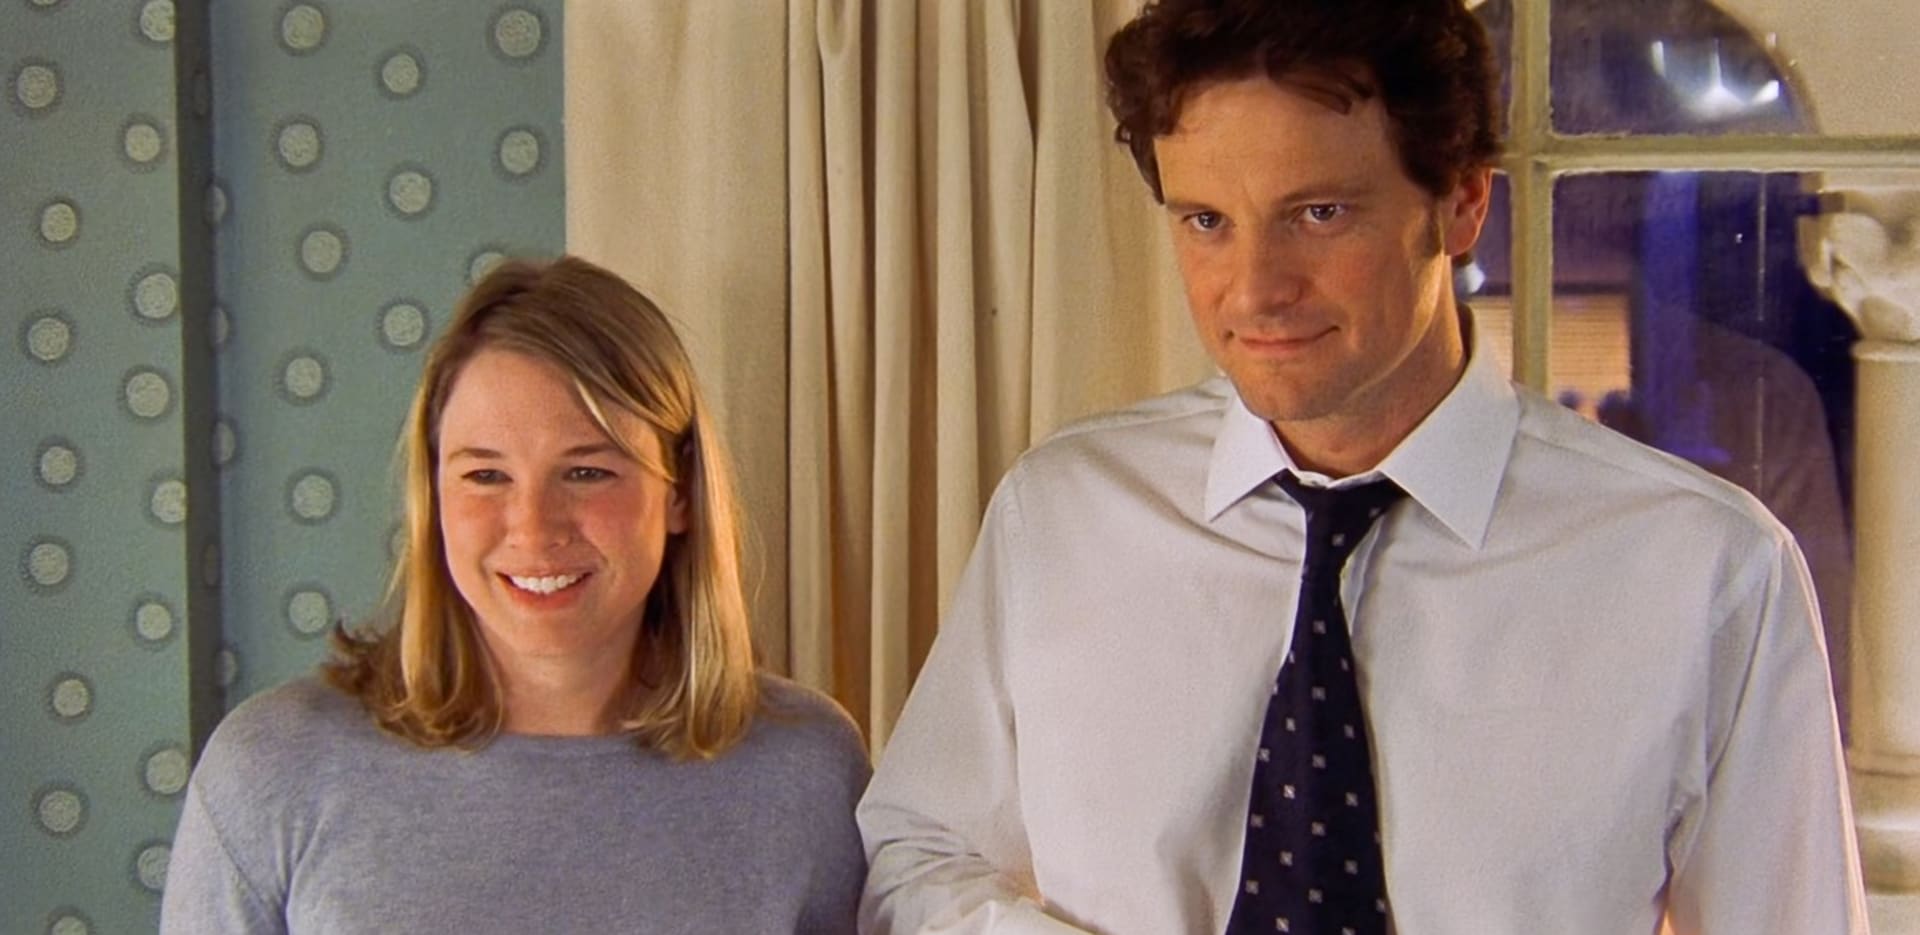 Colin Firth byl v roli sympatického právníka miláčkem žen.